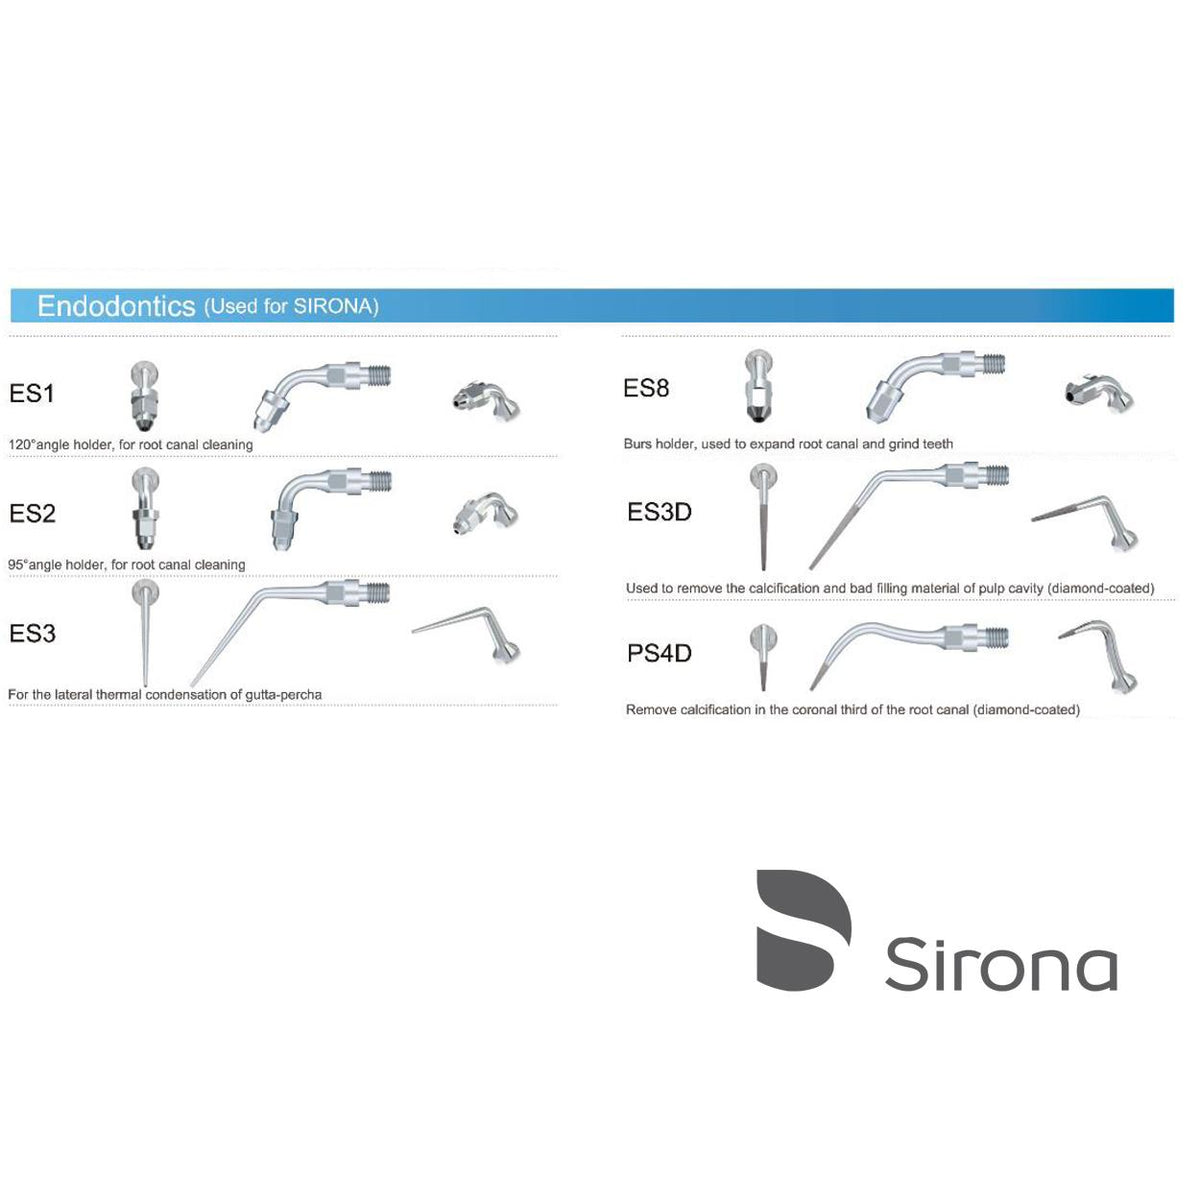 DentrealStore - Woodpecker Endodontic Scaler Tips for Sirona -Endodontic Tips for Sirona